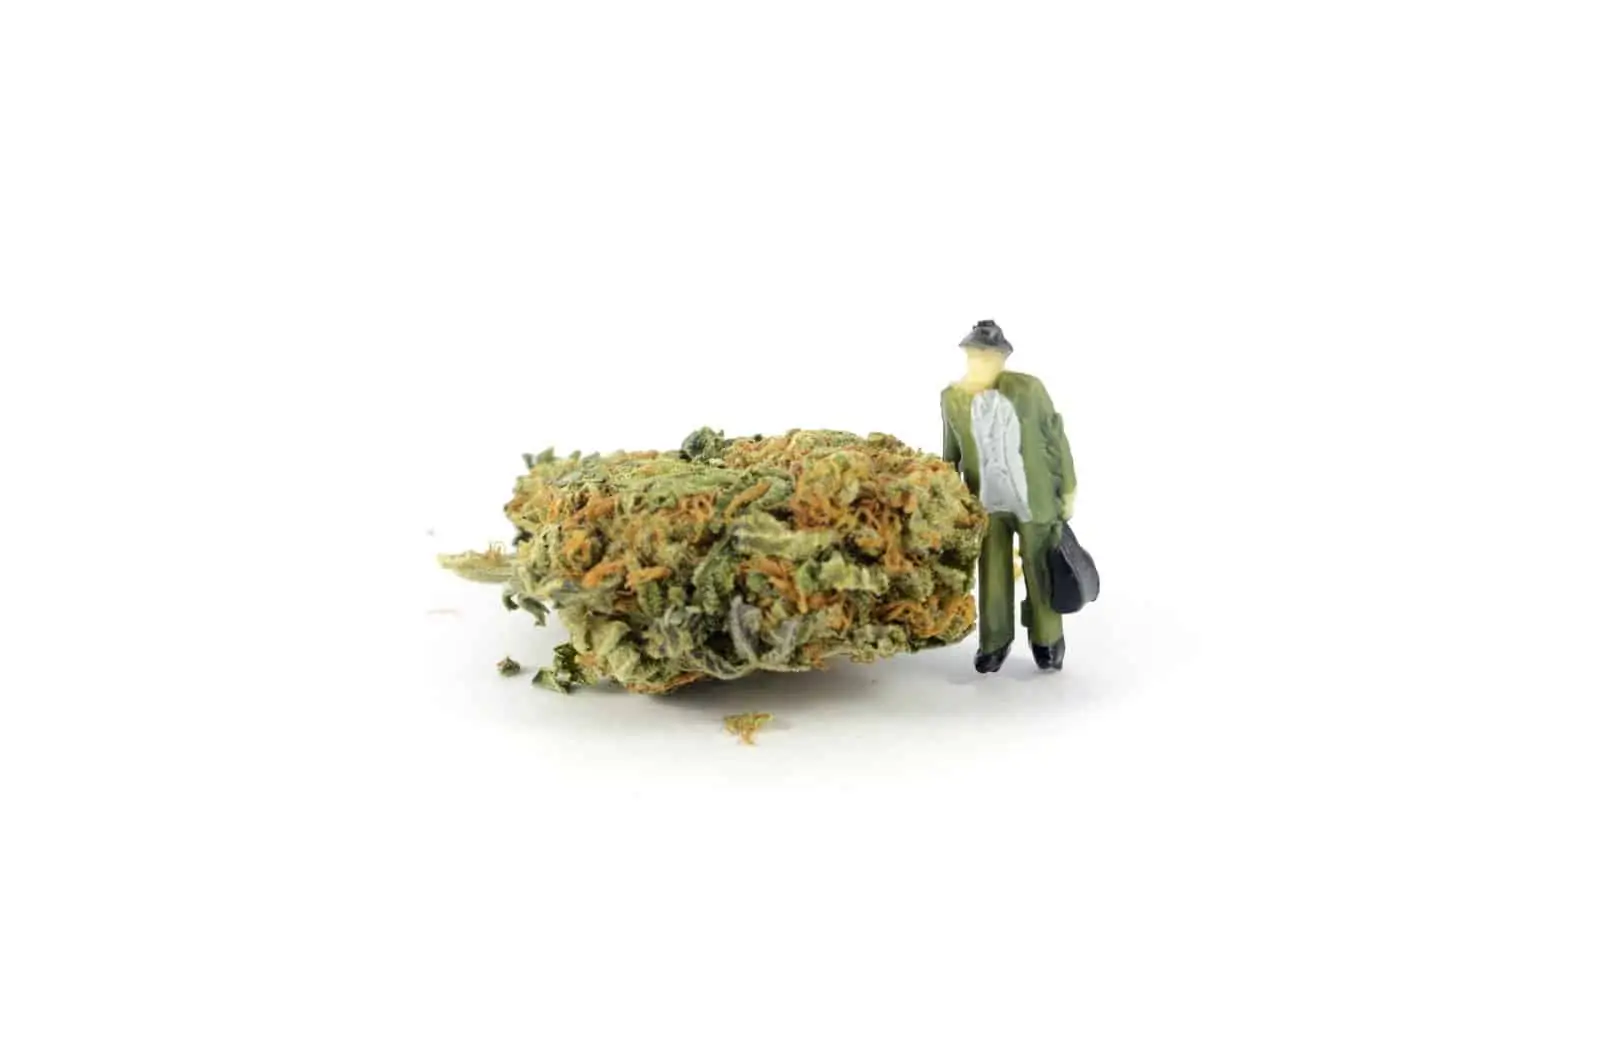 The Debate Behind Cannabis Legalization